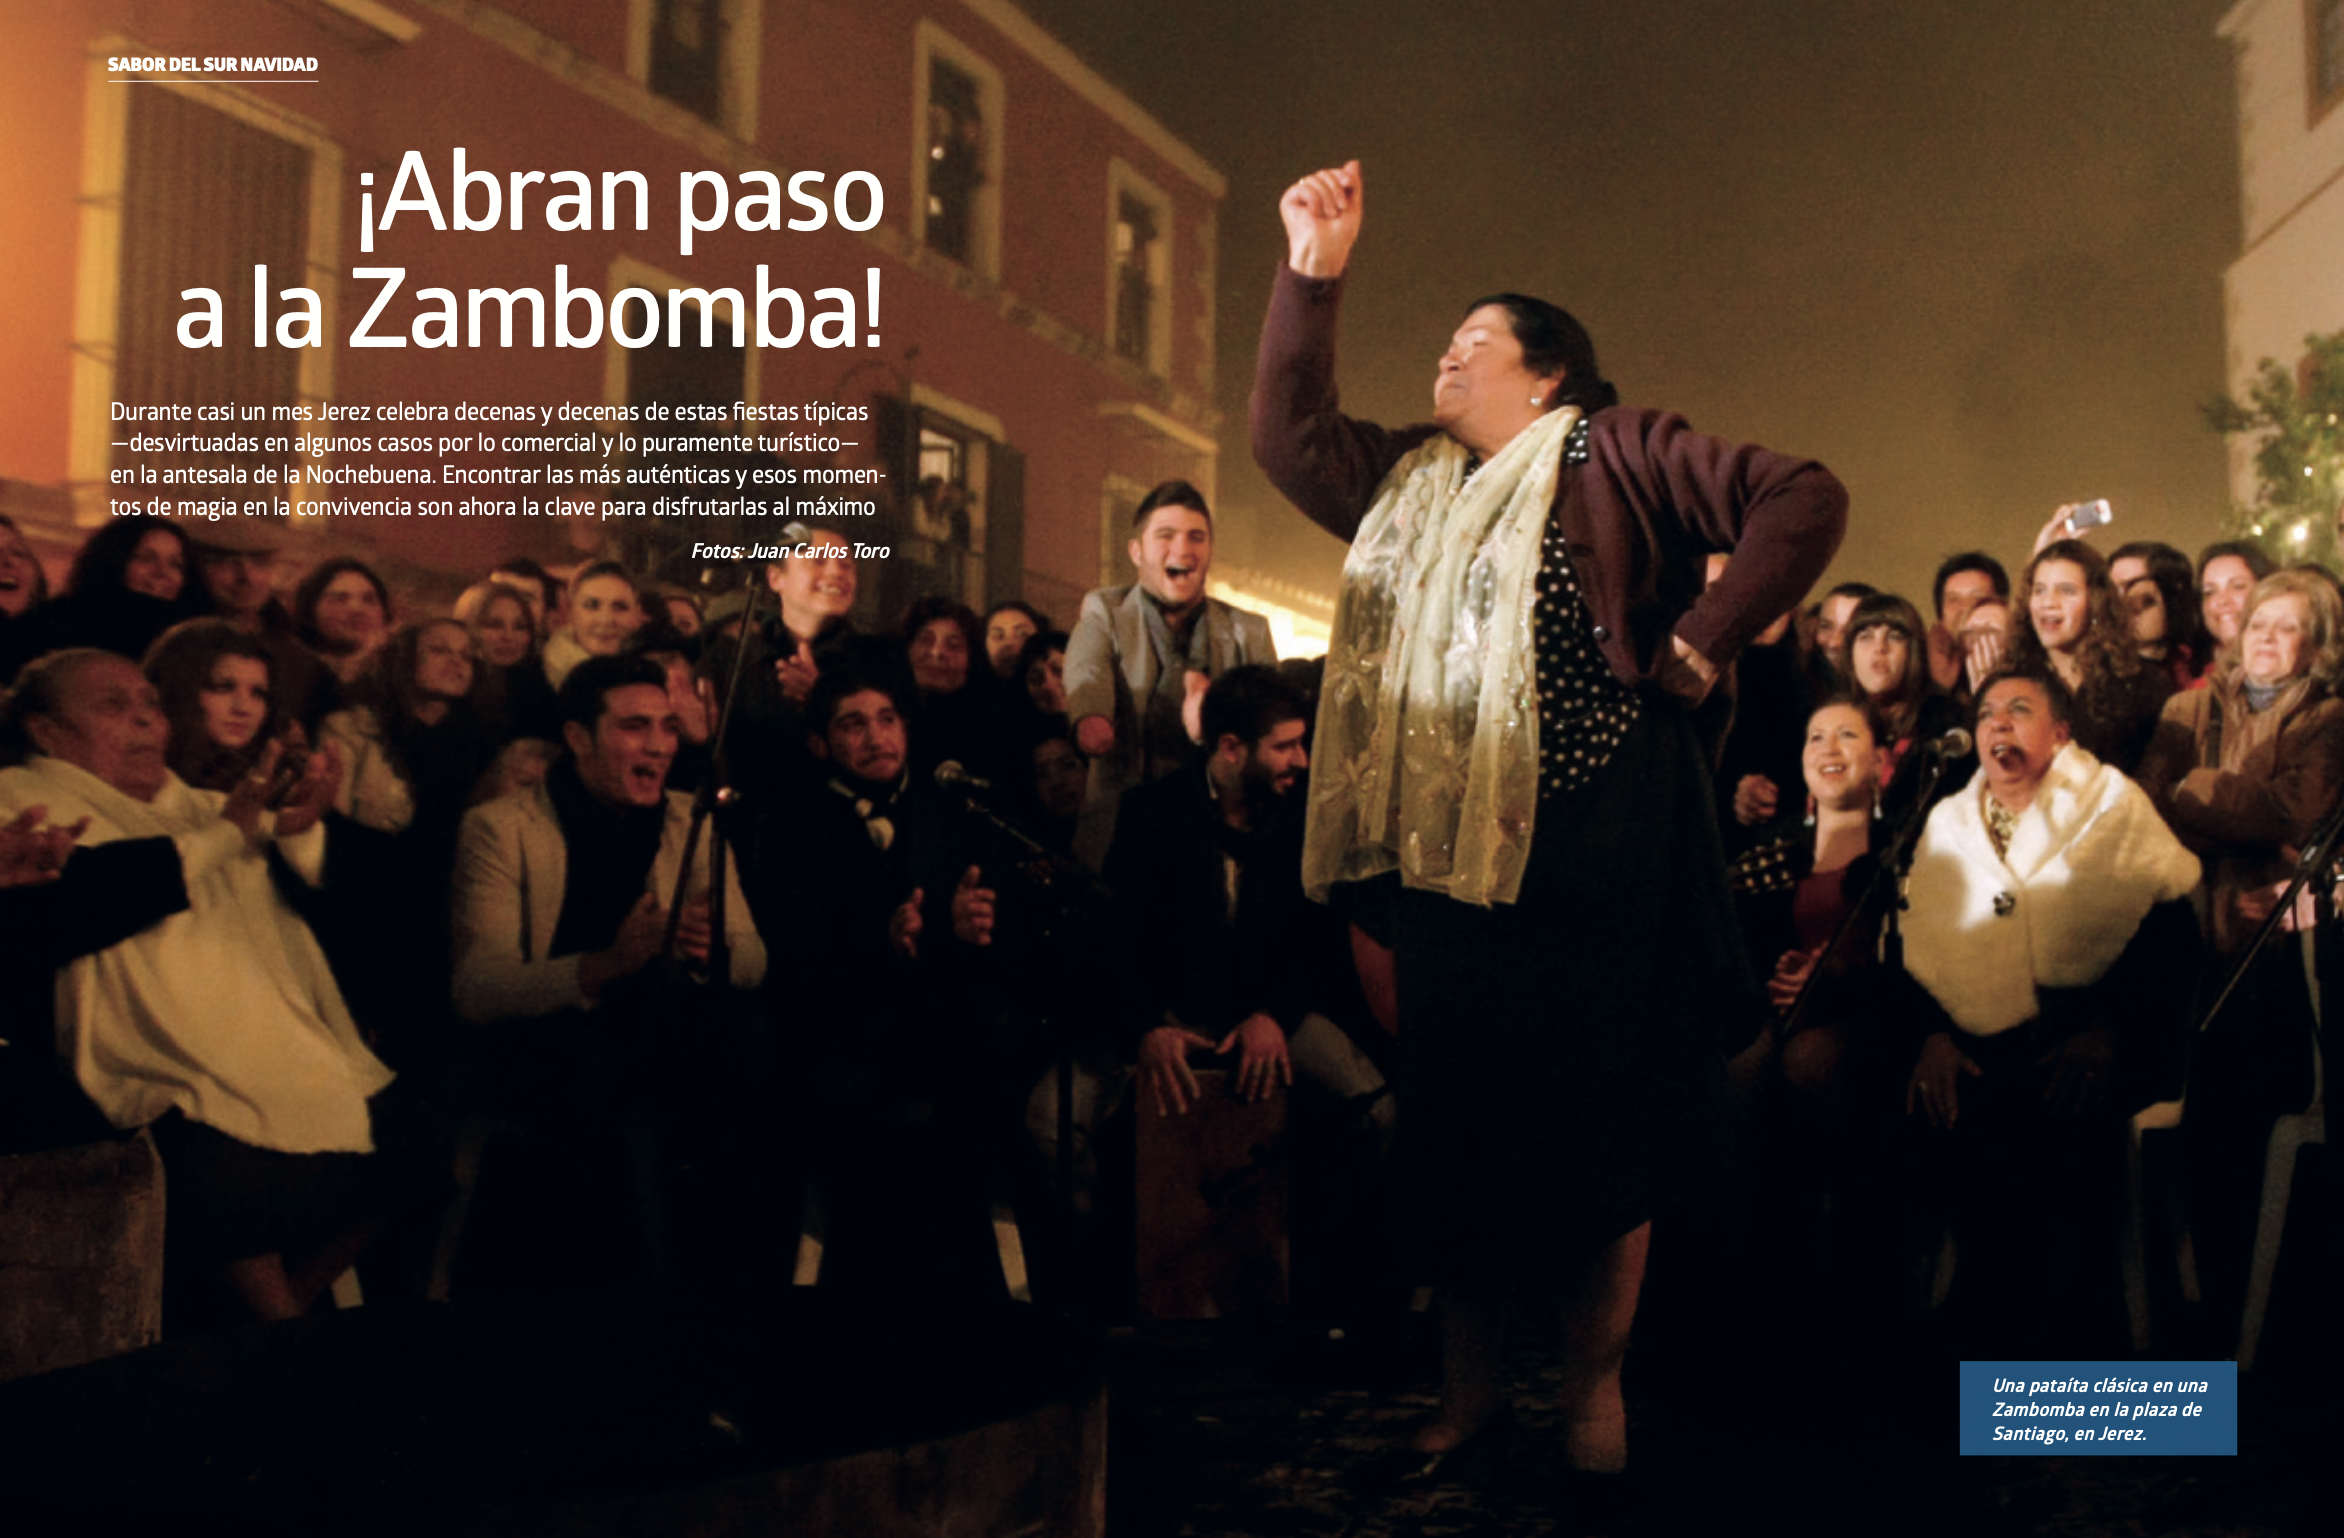 'El Papel de La Voz', la revista de lavozdelsur.es vuelve a casa por Navidad. En la imagen, doble página de apertura del fotoensayo de Juan Carlos Toro.